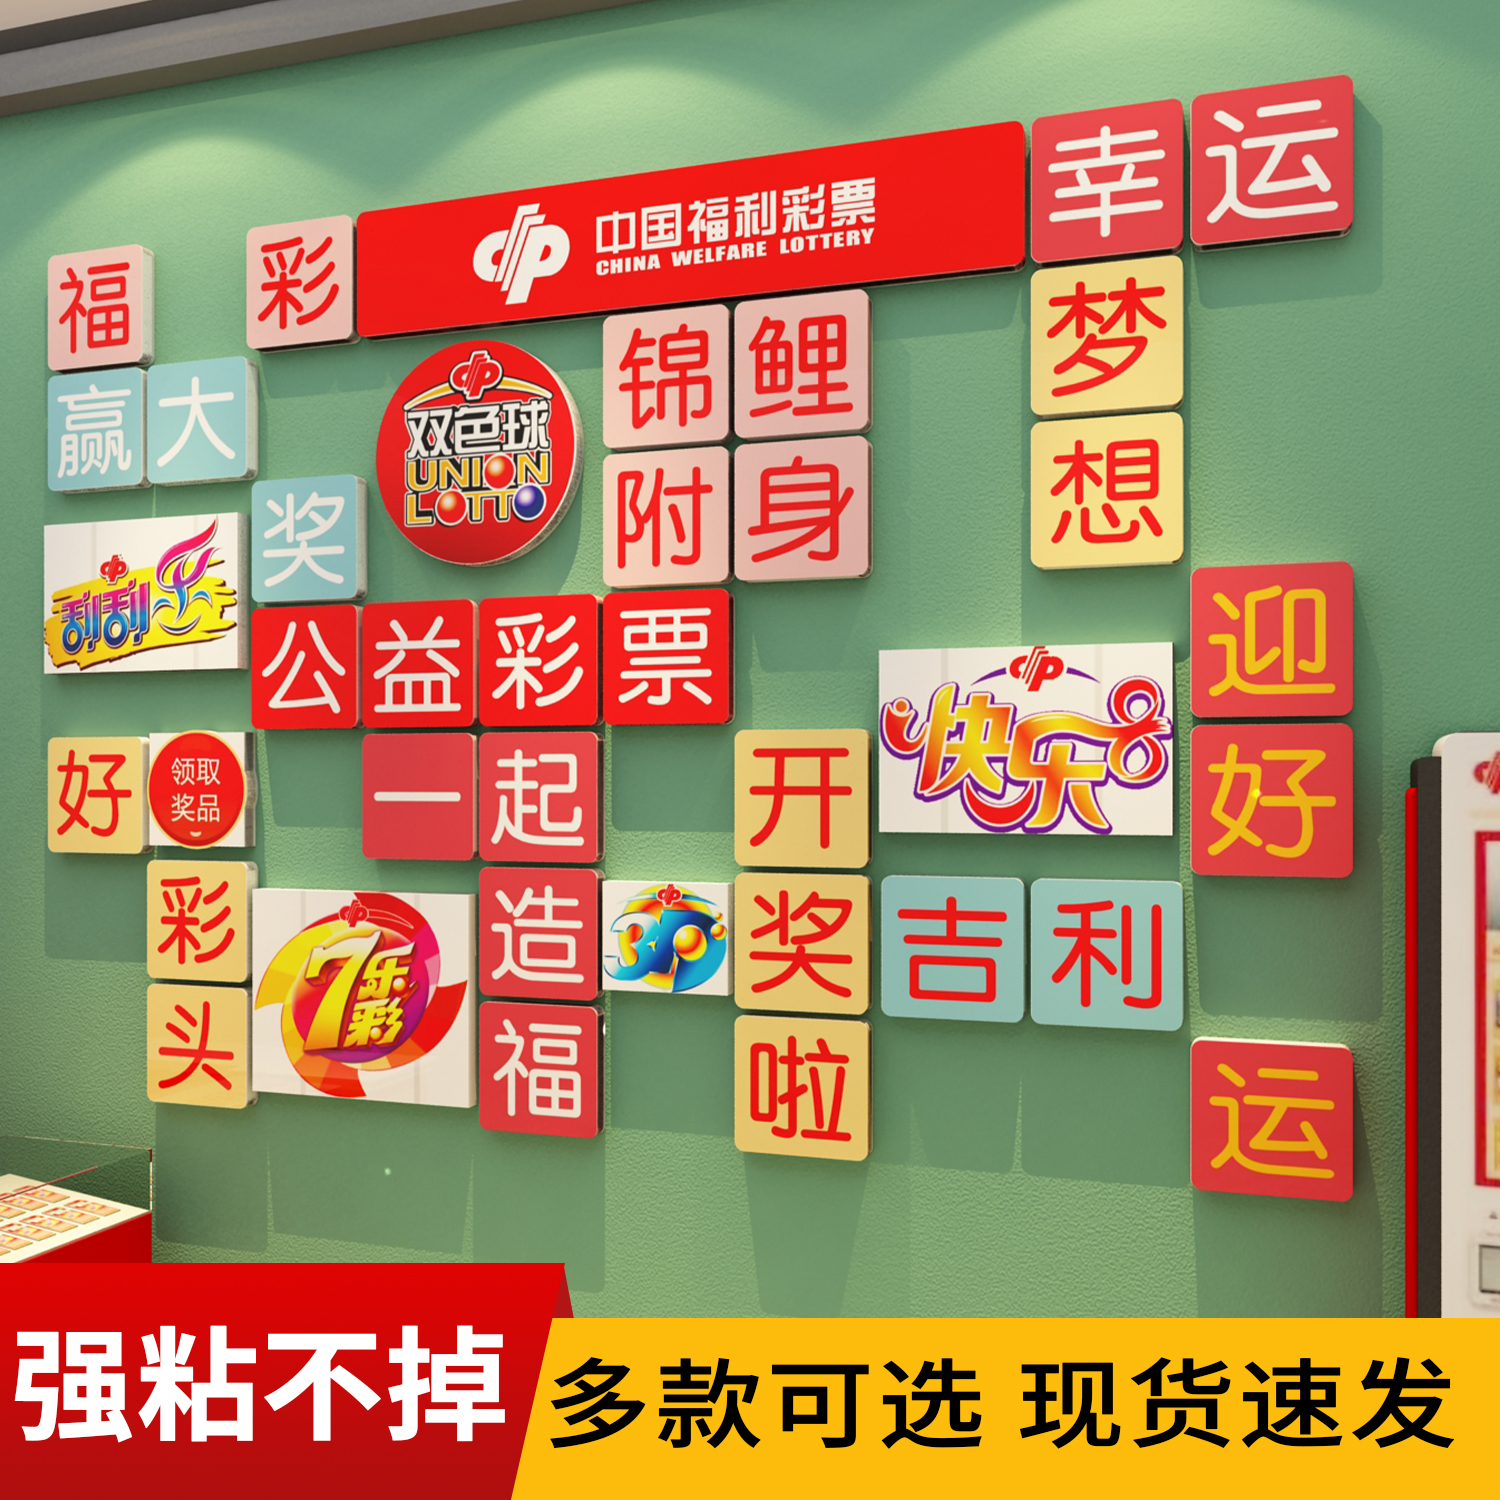 网红福彩彩票店装饰海报中国体育福利站墙面布置刮刮乐广告贴纸画